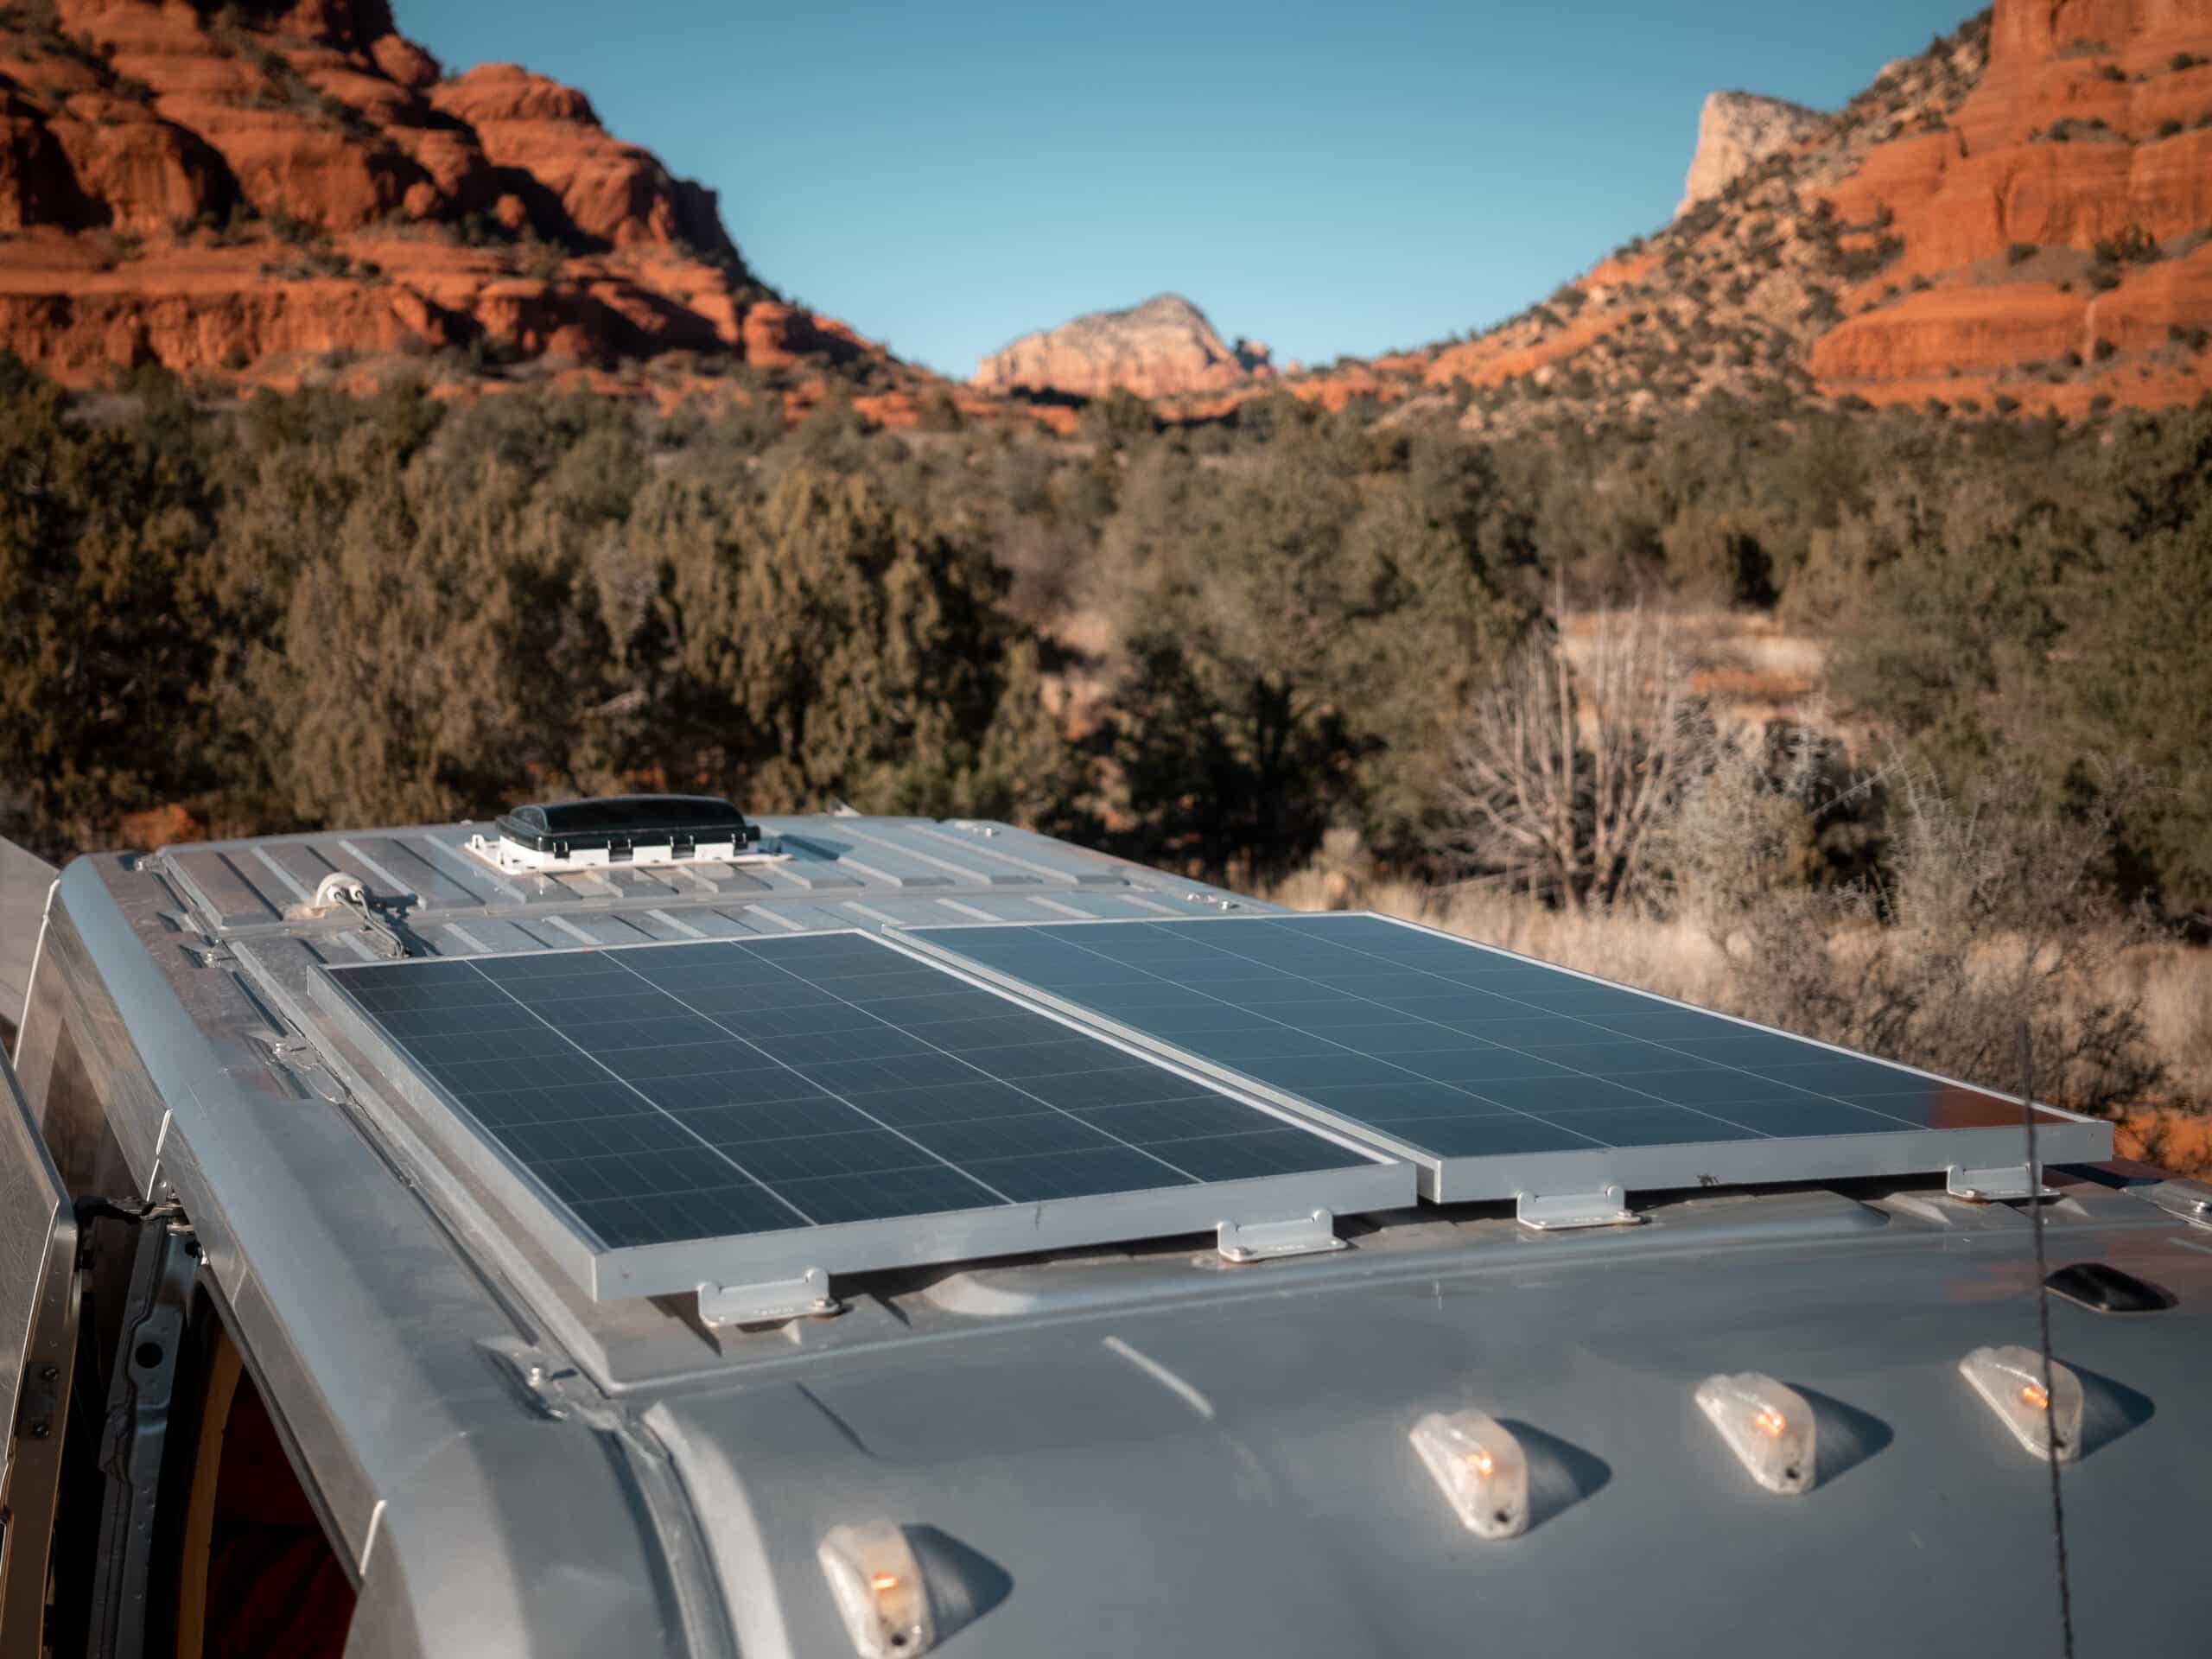 Solar panels on a van